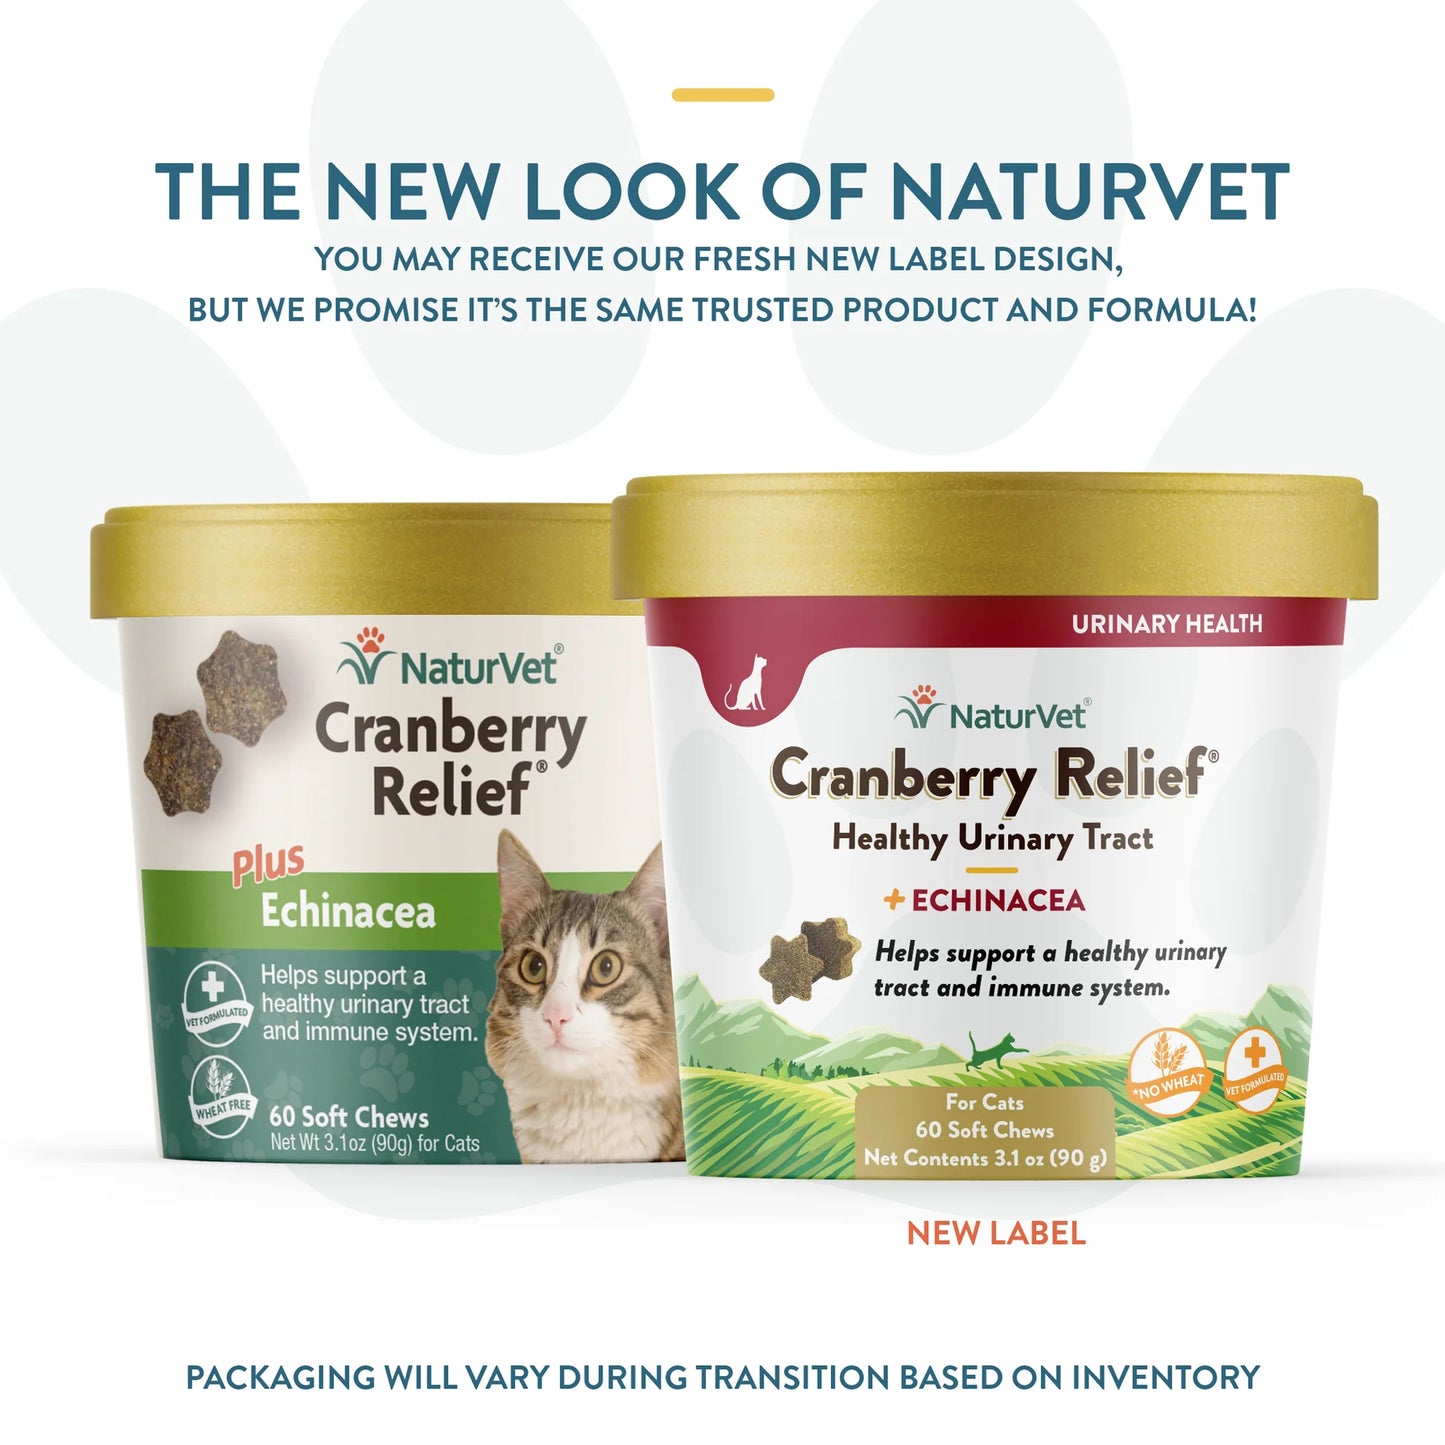 NaturVet Cranberry Relief Plus Echinacea Cat Soft Chews, 60 count